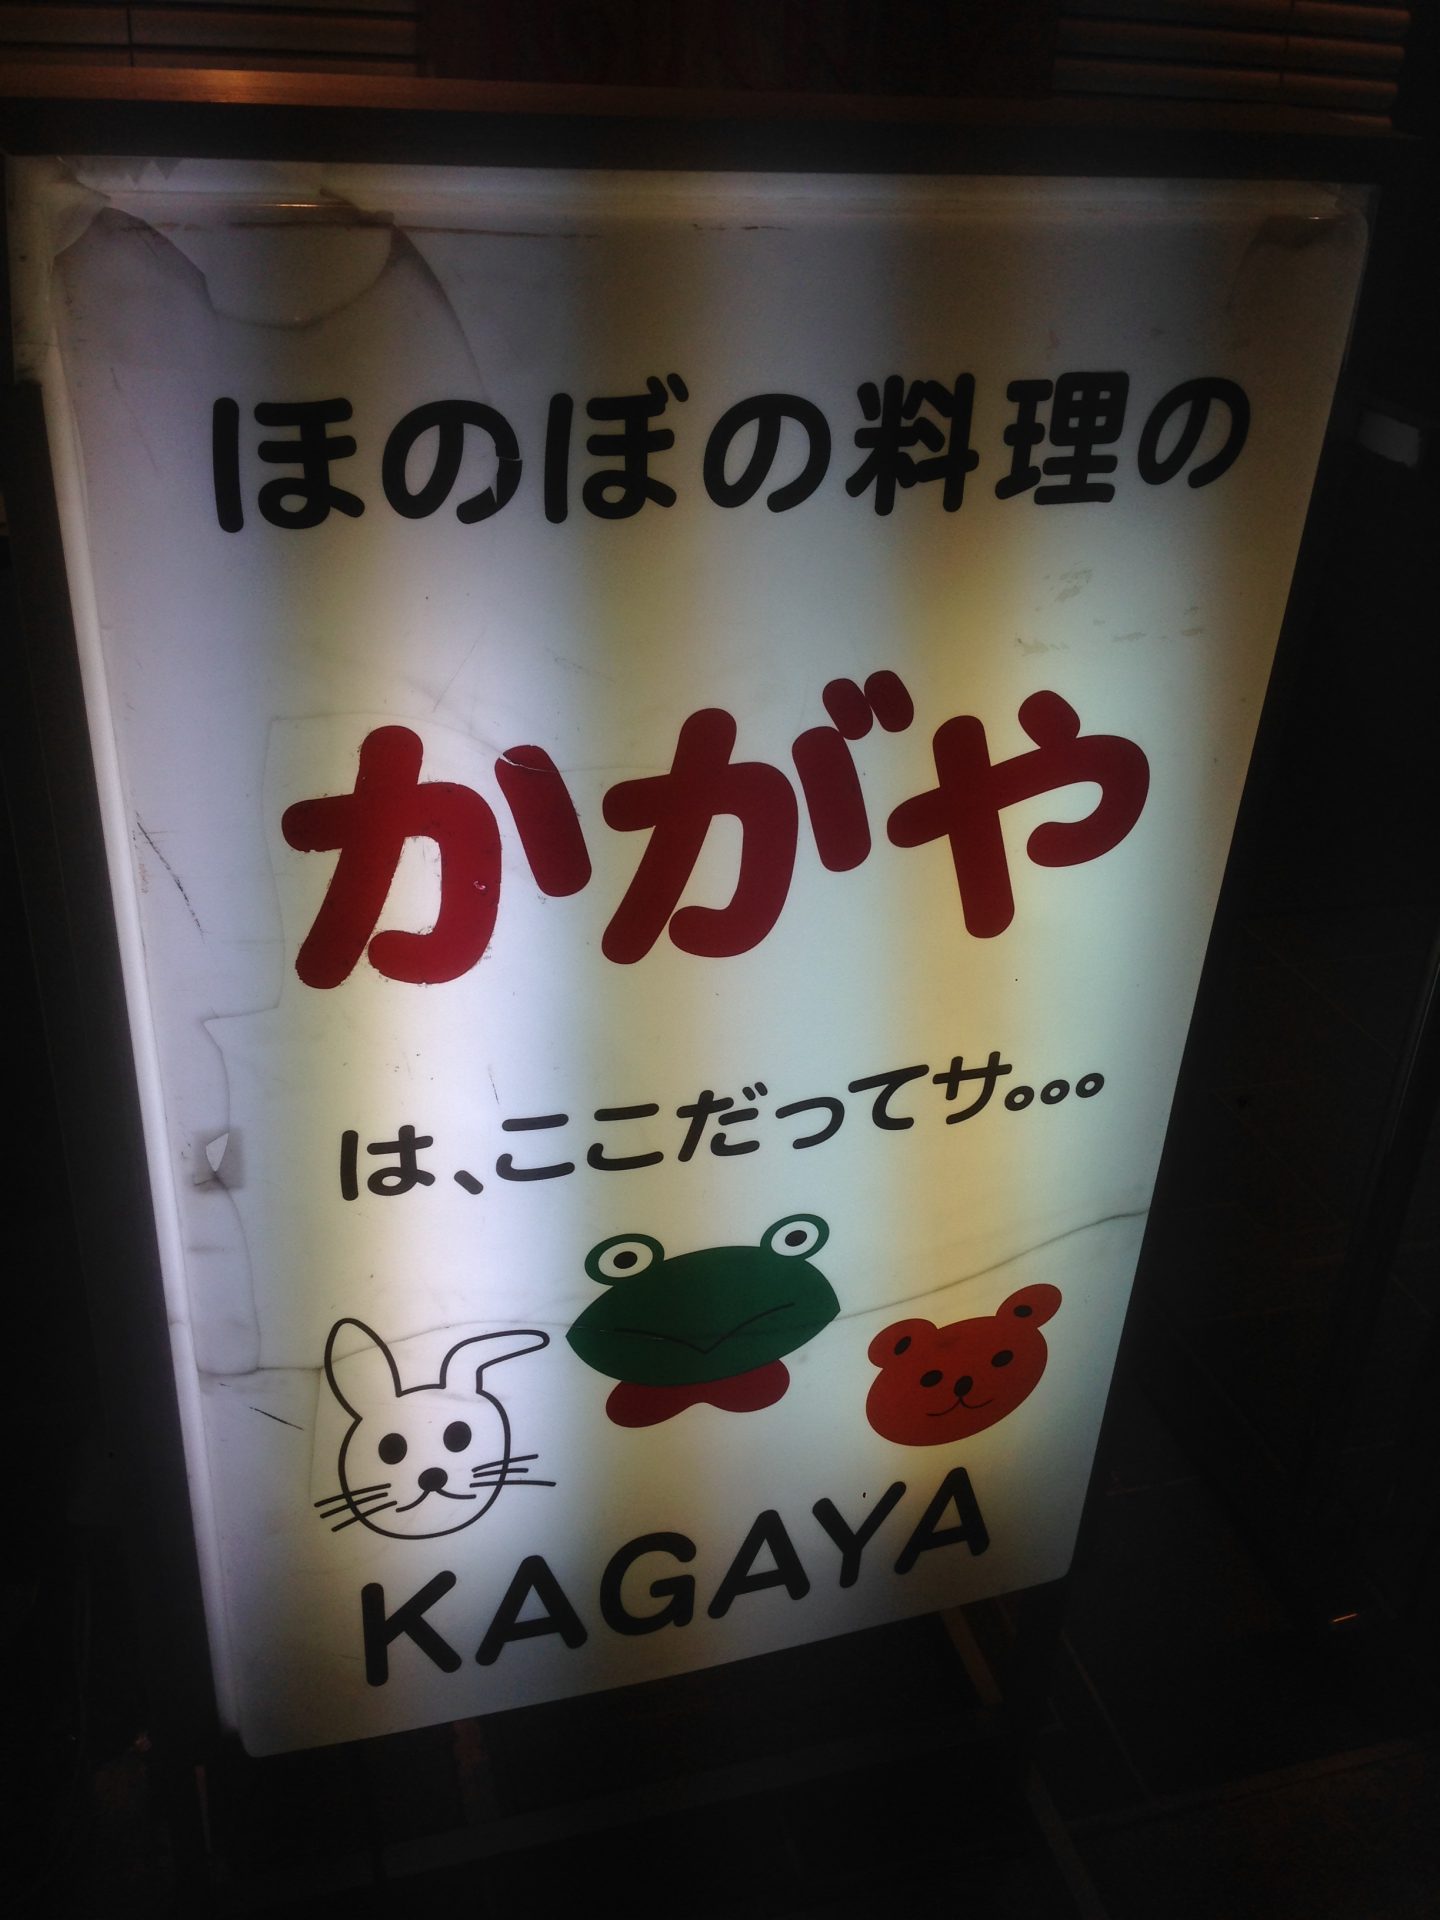 honobono-kagaya